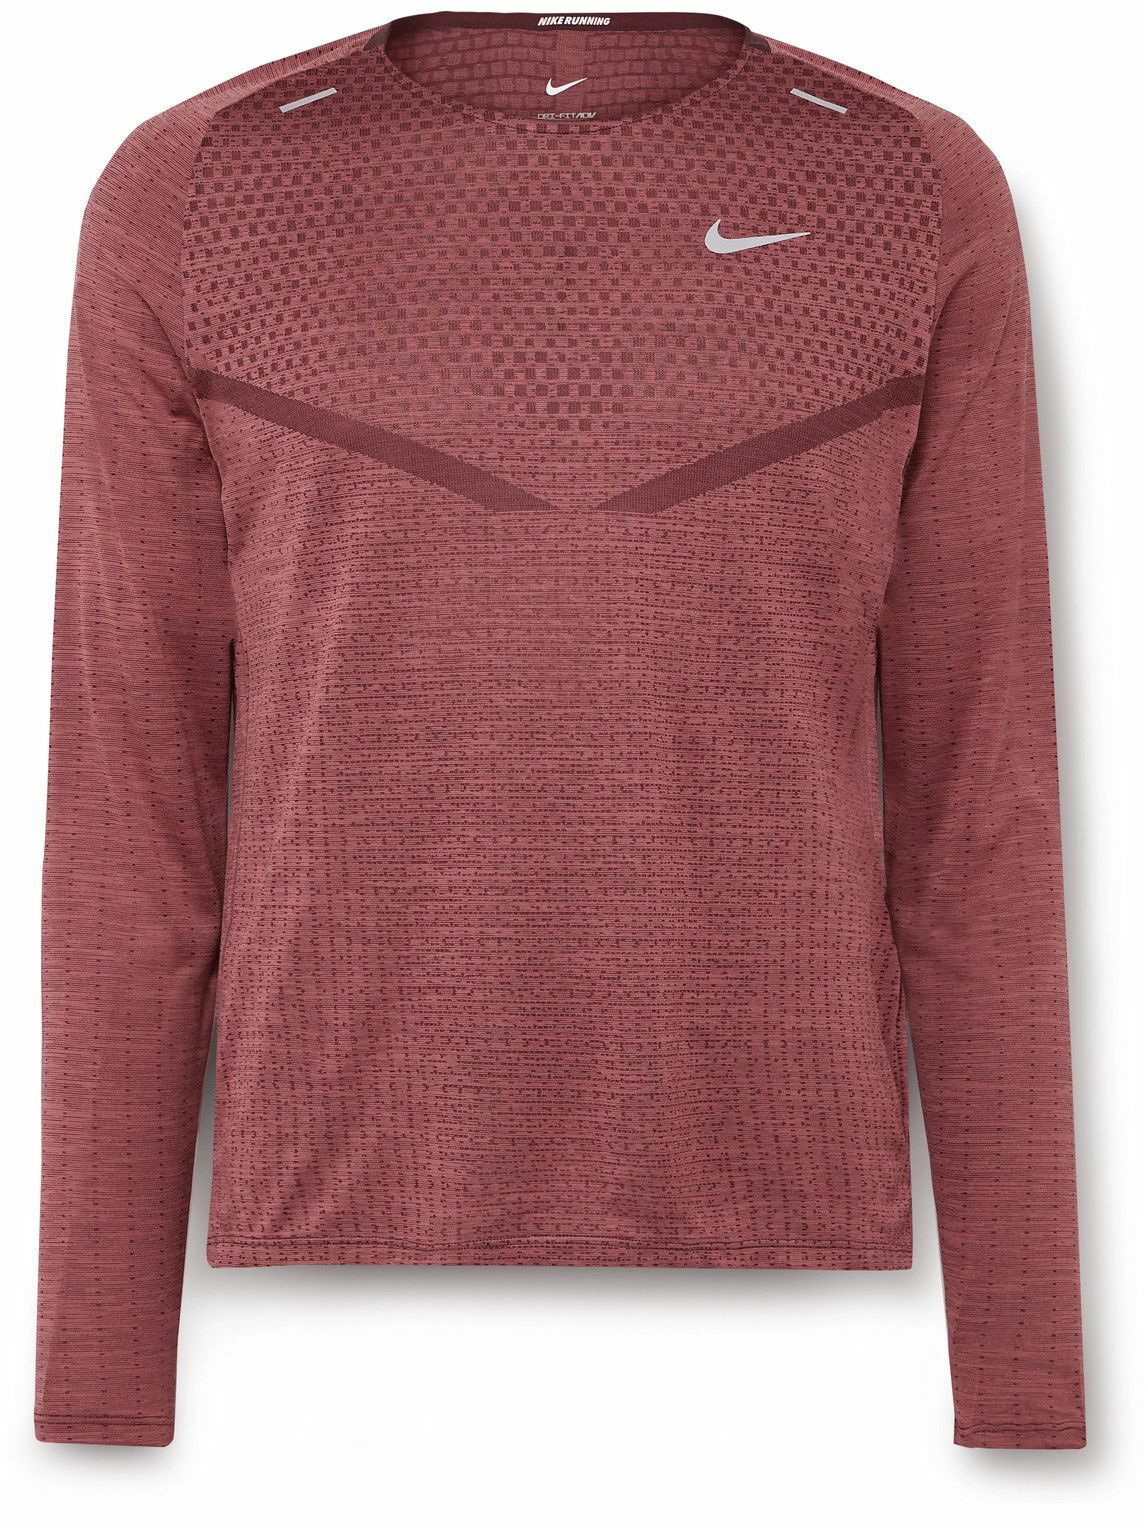 Photo: Nike Running - Slim-Fit Dri-FIT ADV TechKnit T-Shirt - Red